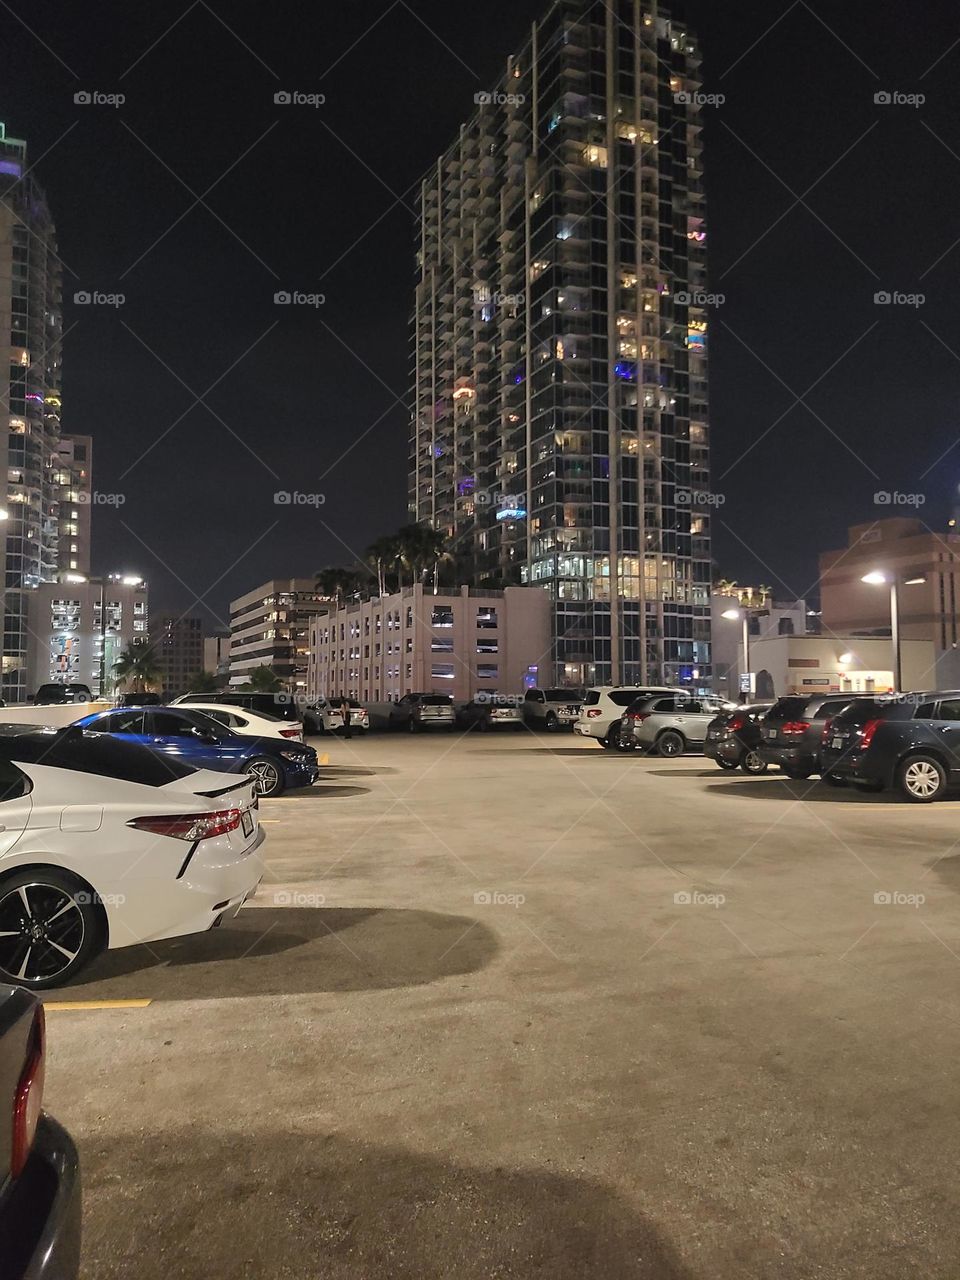 Roof top parking Tampa Florida 2021